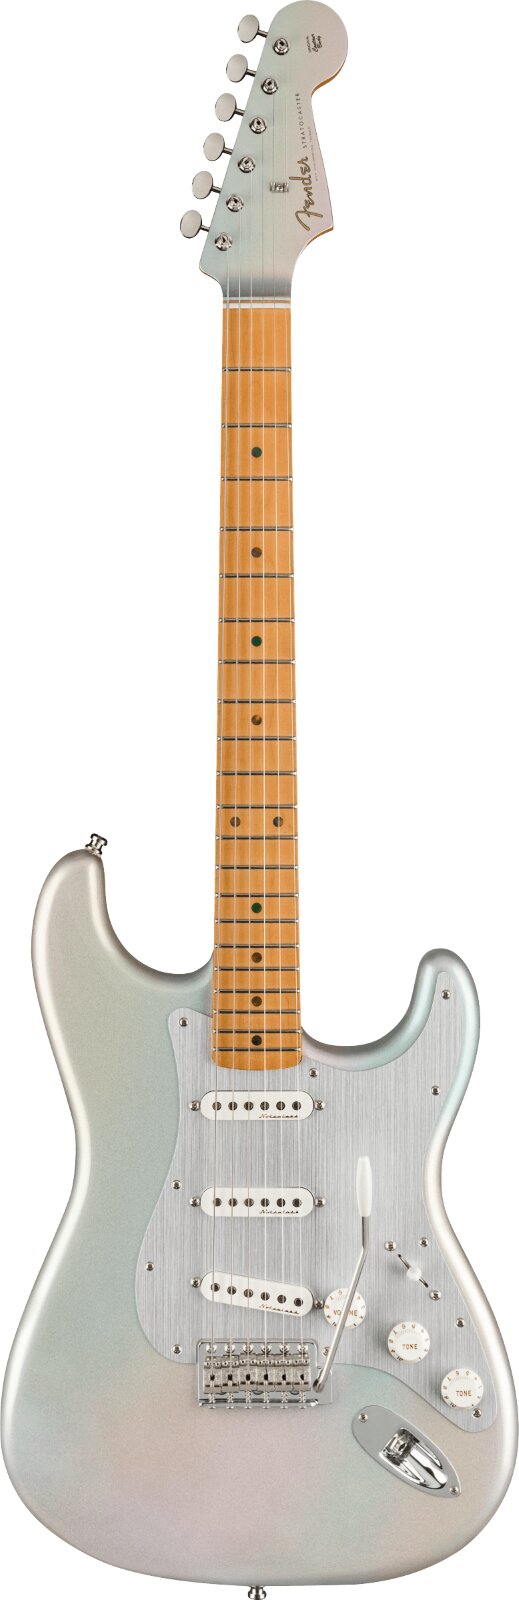 Fender HER Stratocaster Maple Griffbrett Chrome Glow : photo 1